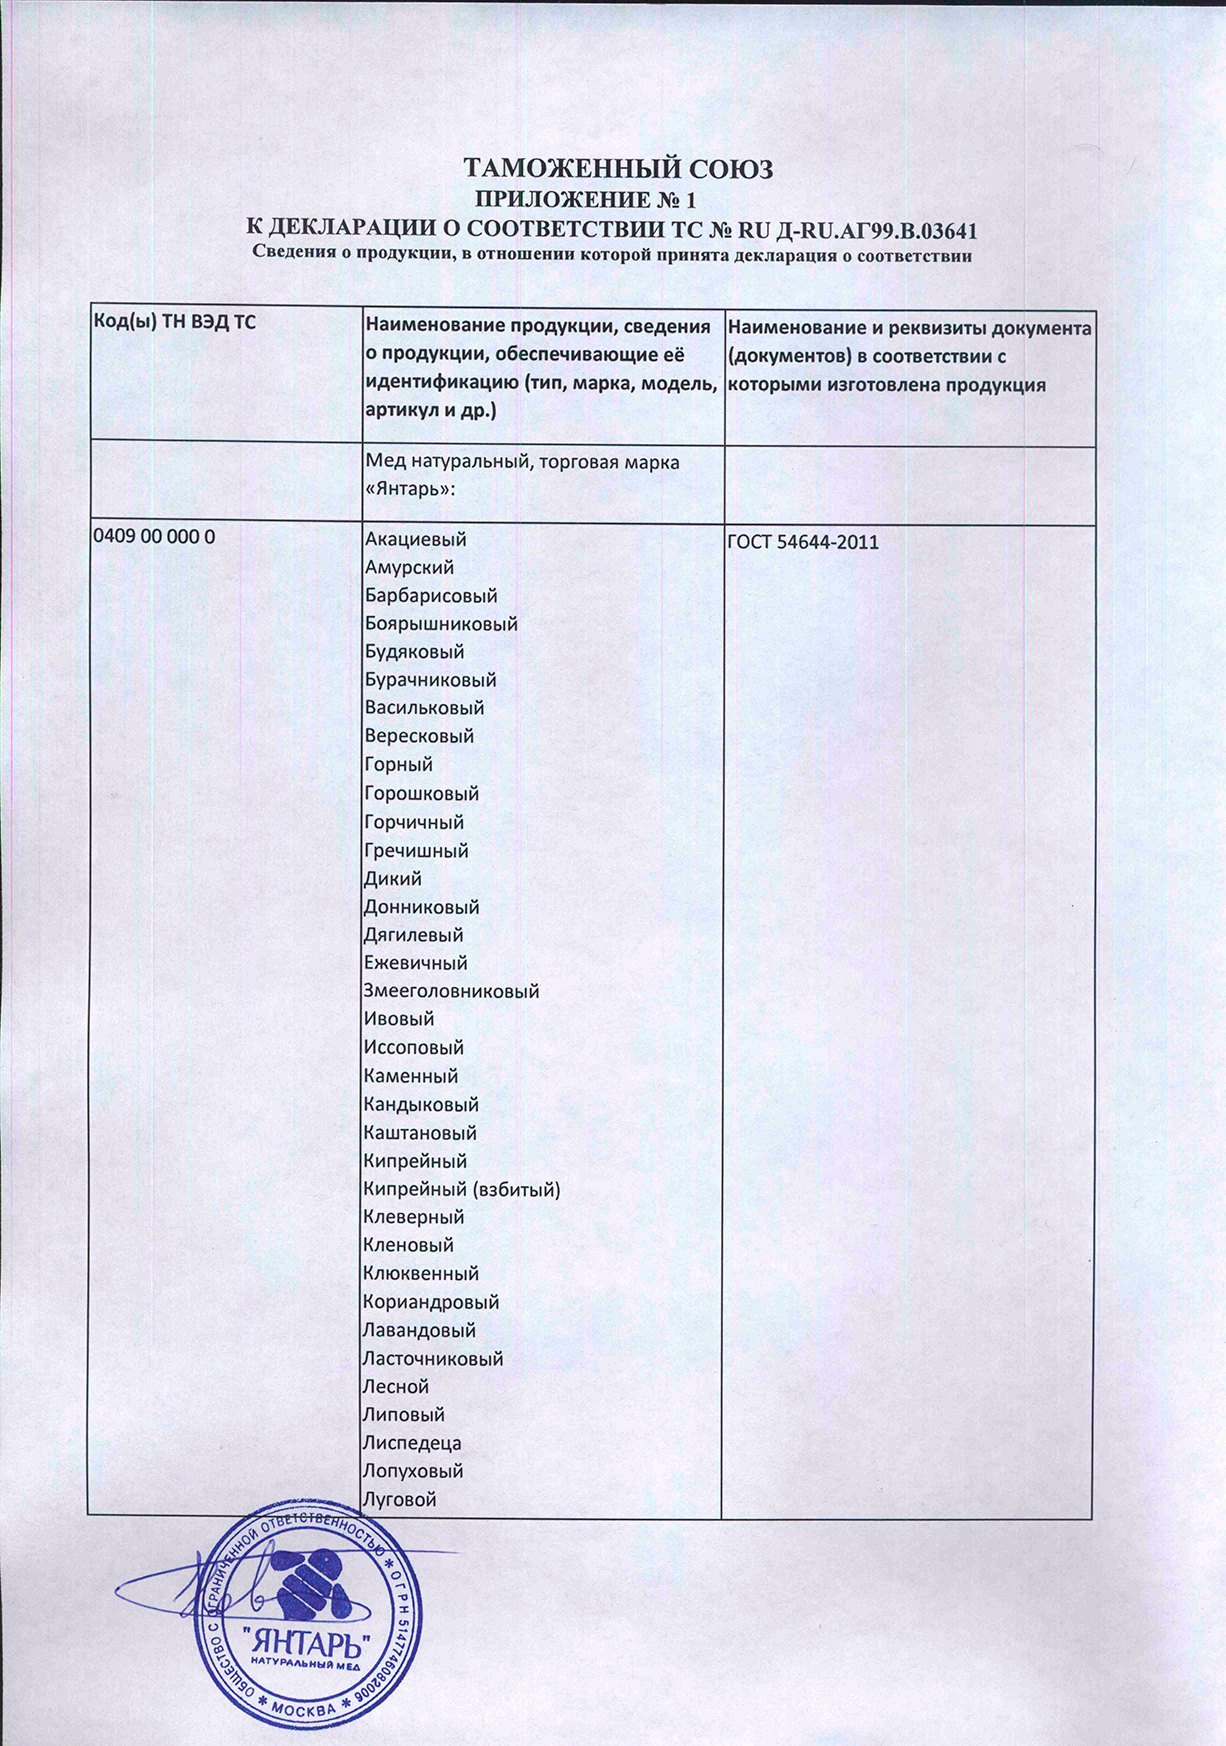 Приложение N1 (лист 1) к декларации 2015-2018